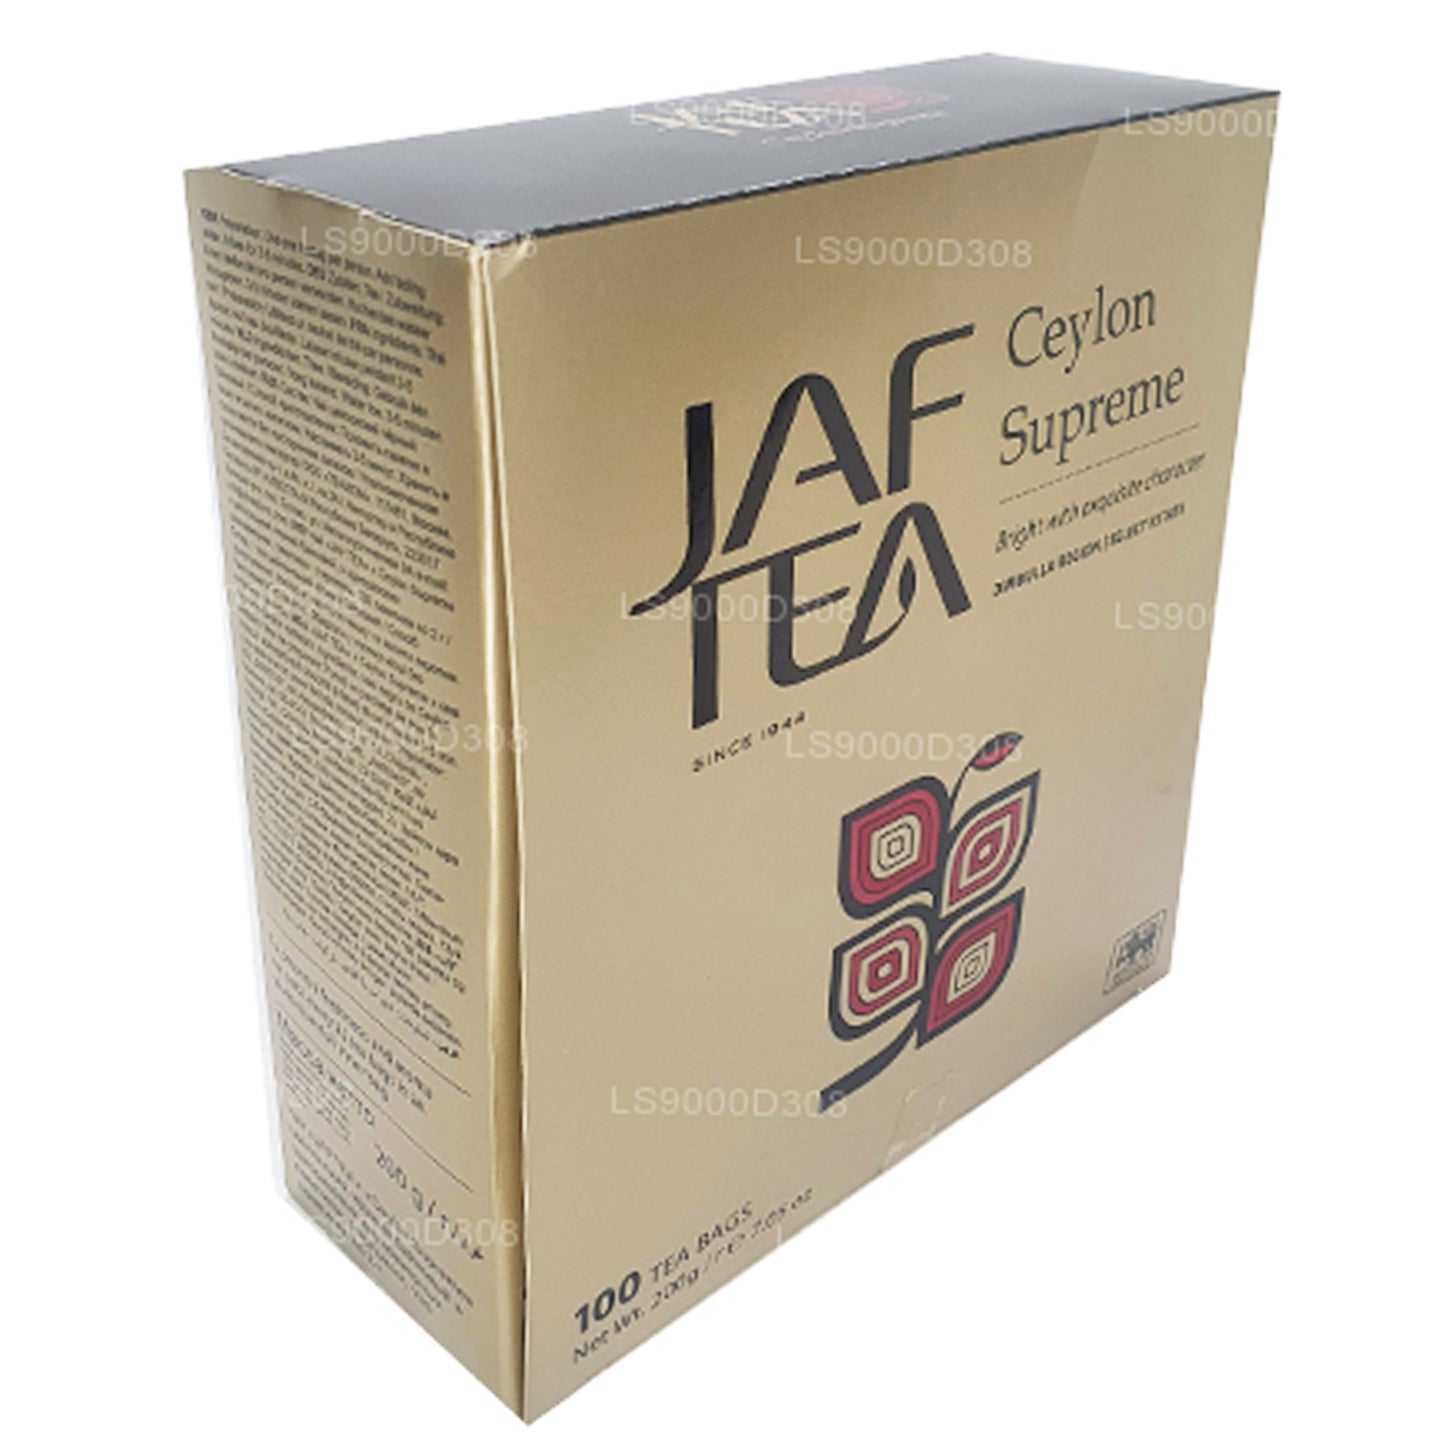 Cadena y etiqueta de té Jaf Tea Classic Gold Collection Ceylon Supreme, 100 bolsas de té (200 g)